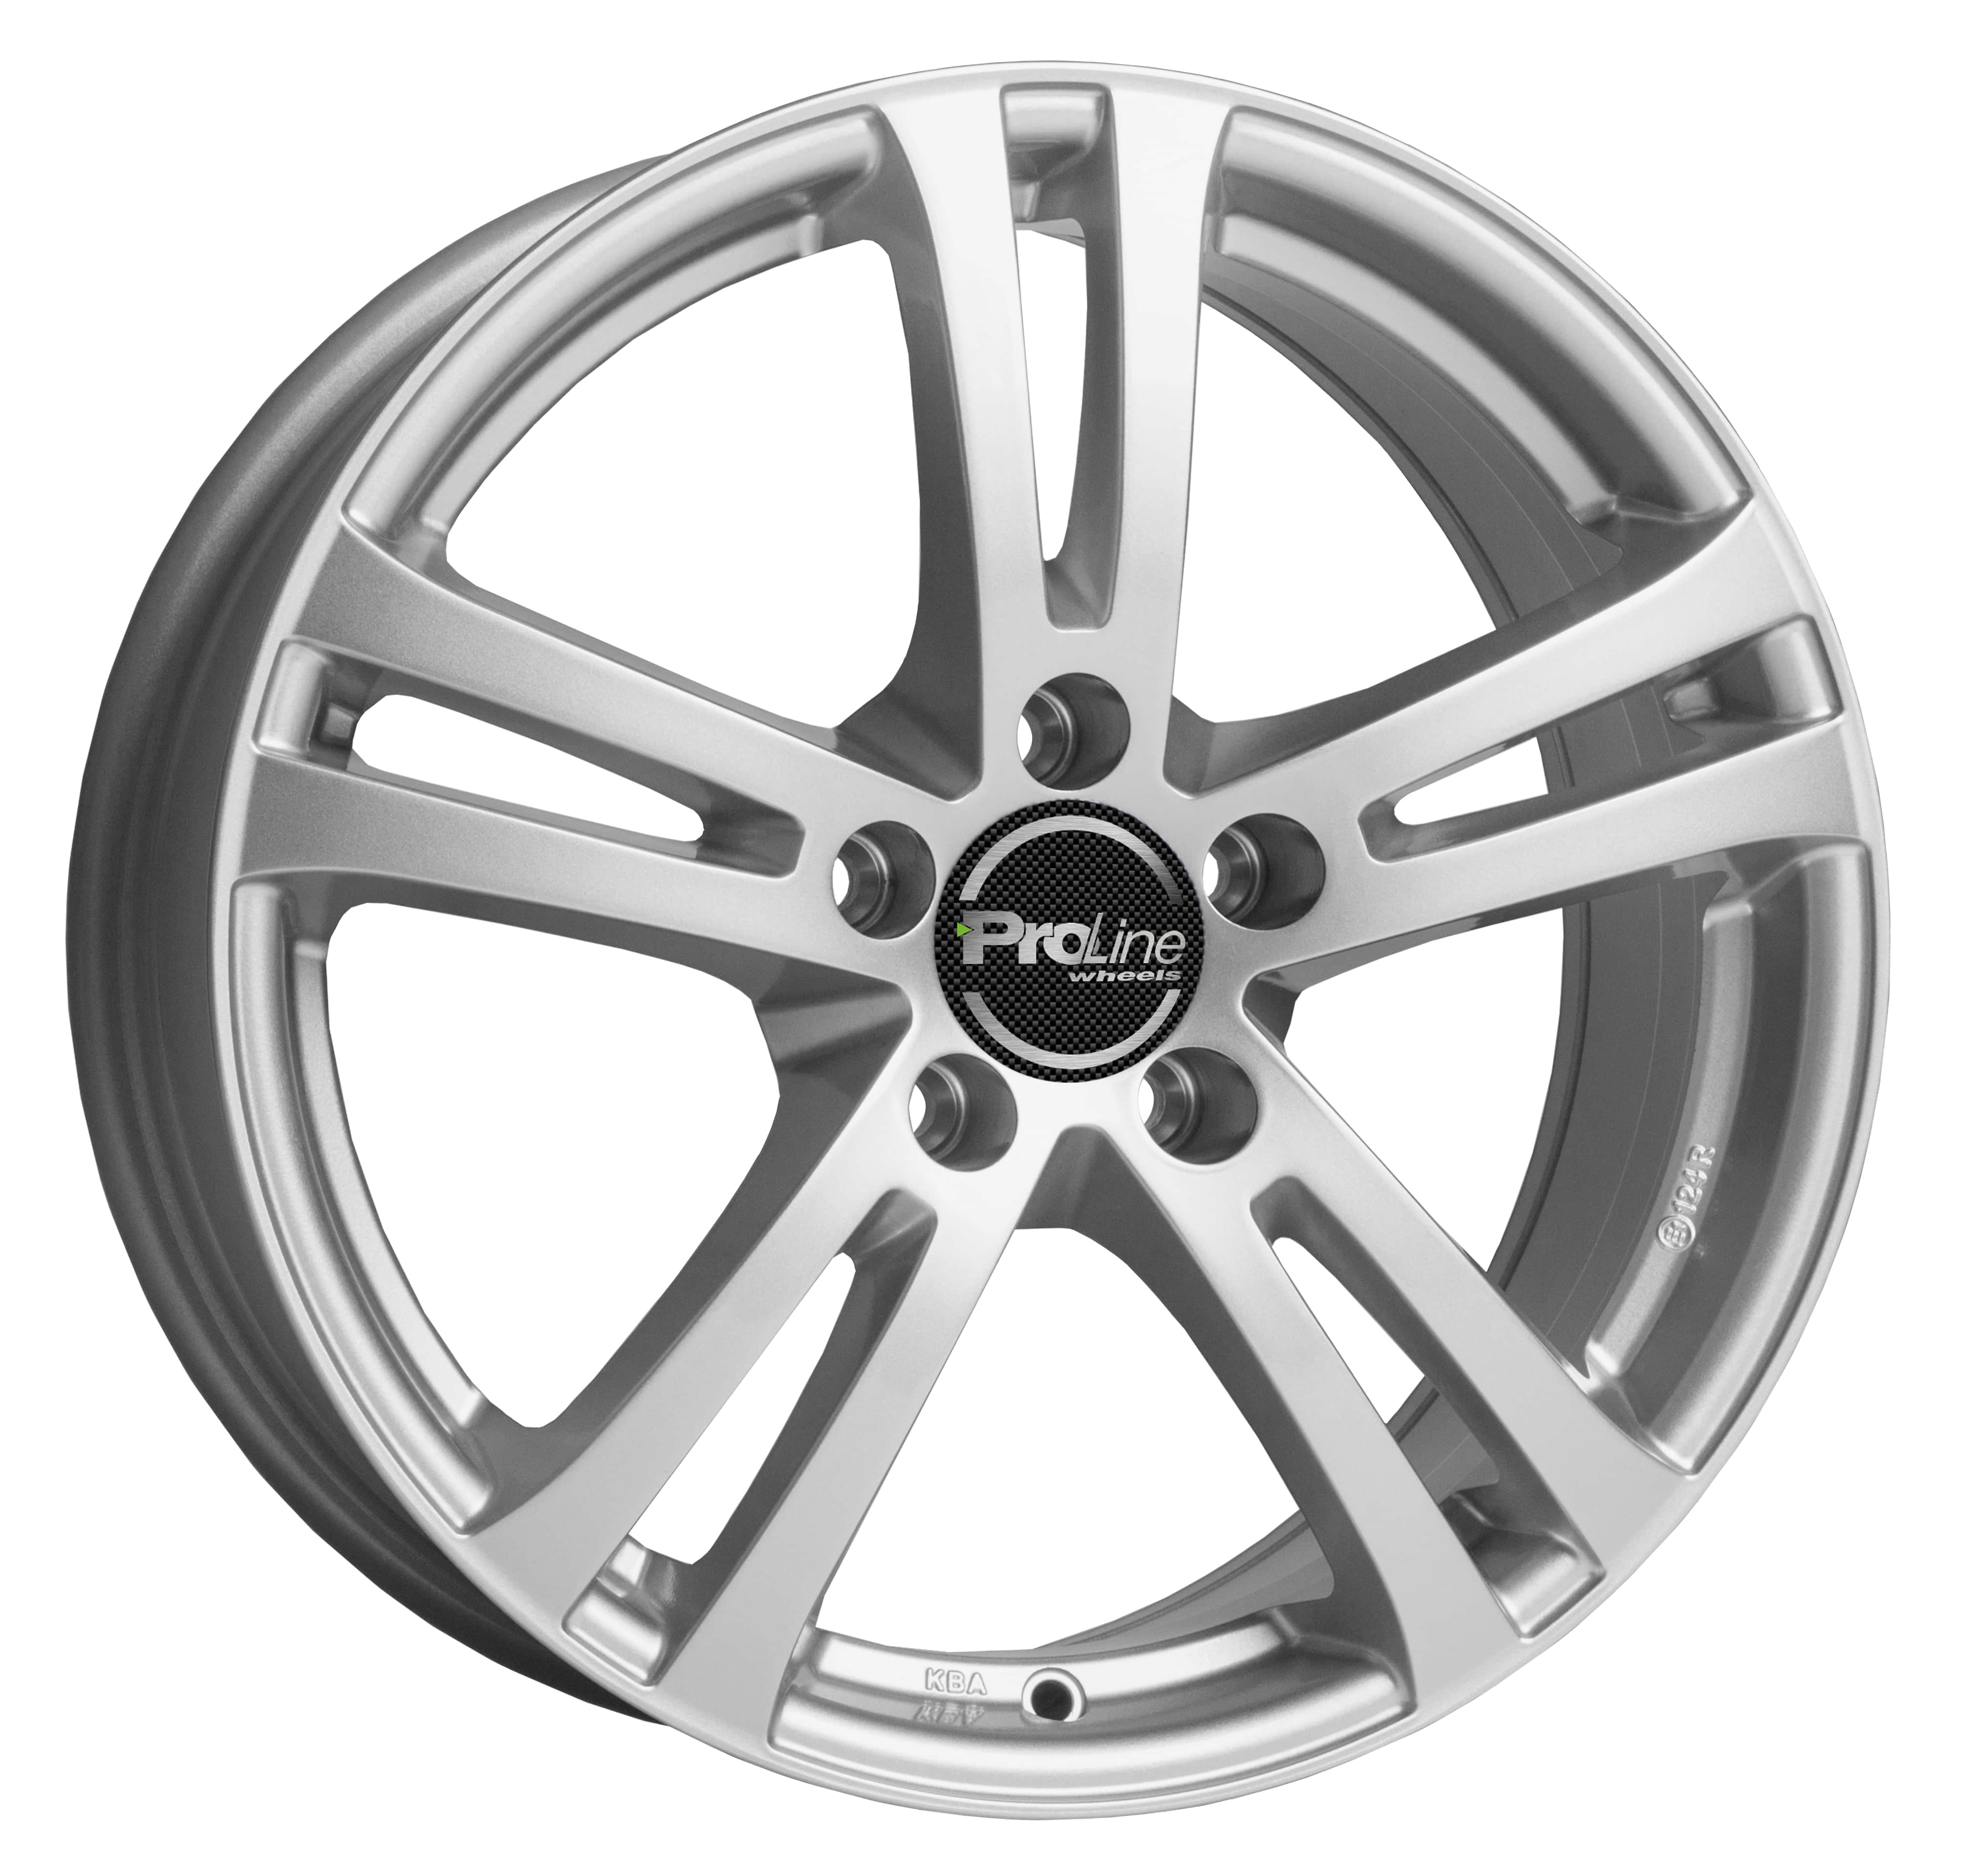 Proline Wheels-Tec GmbH BX700 arctic silver